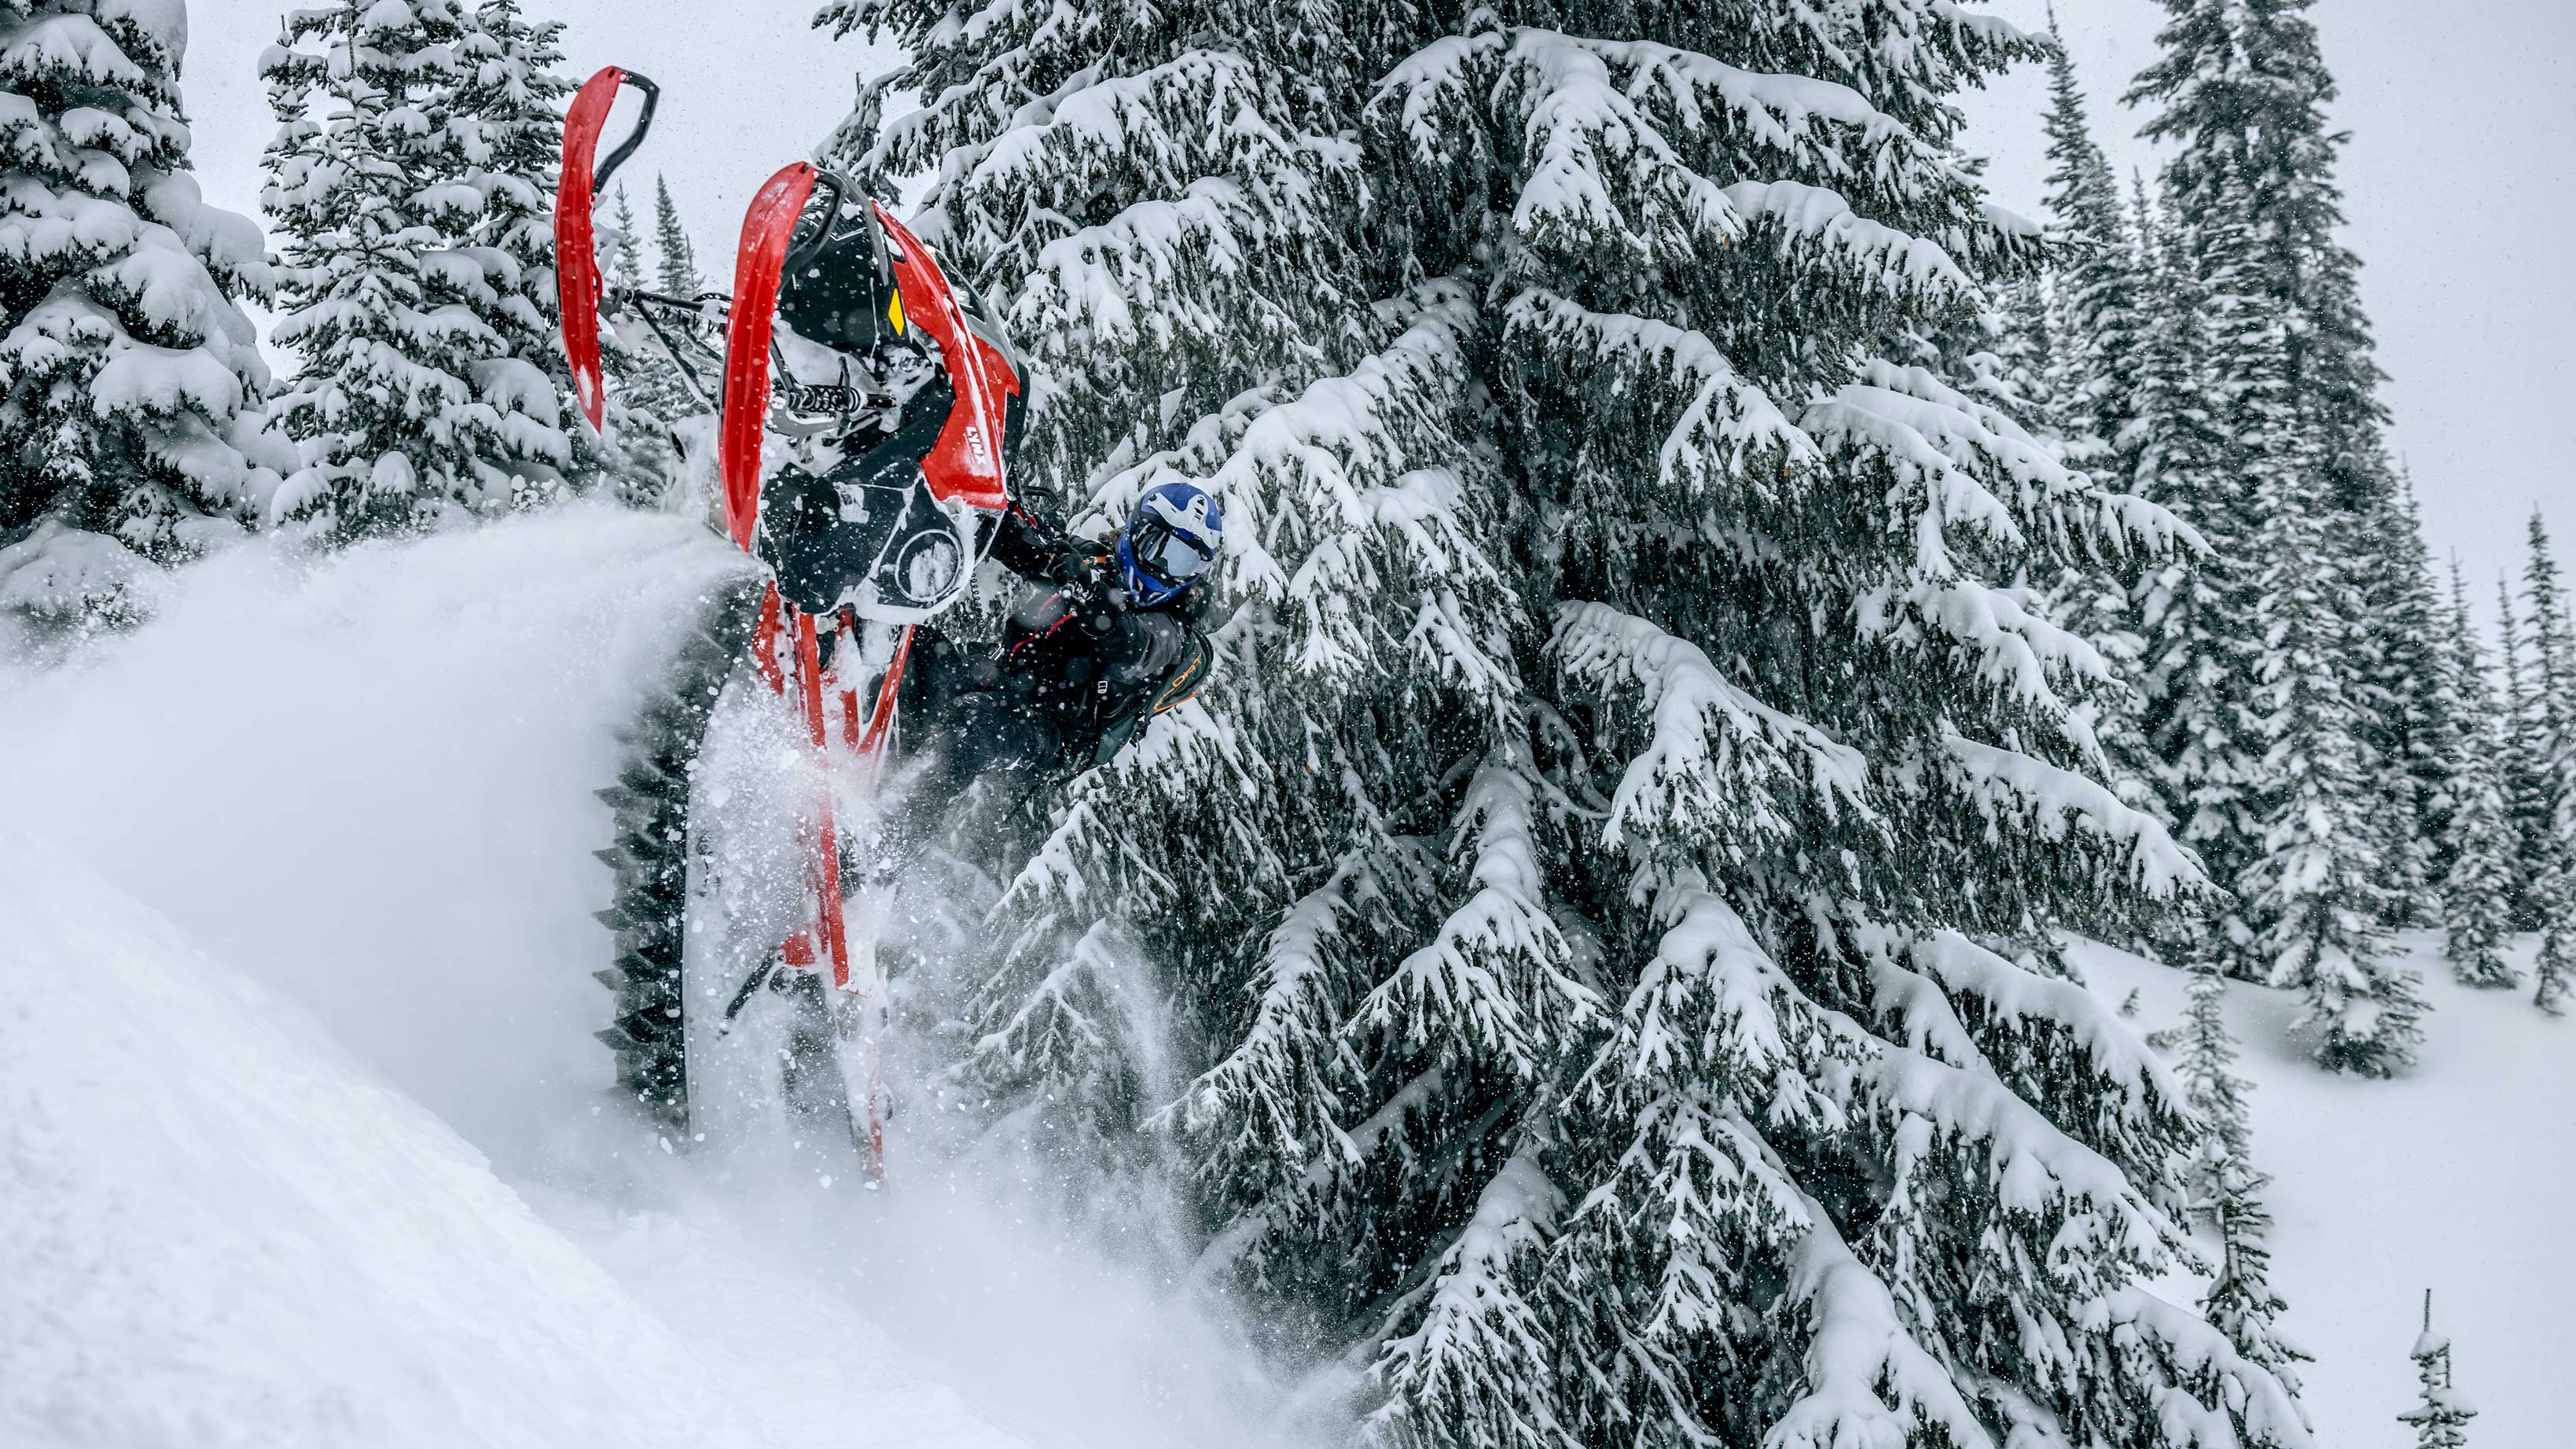 Lynx snowmobile rider in mid-air